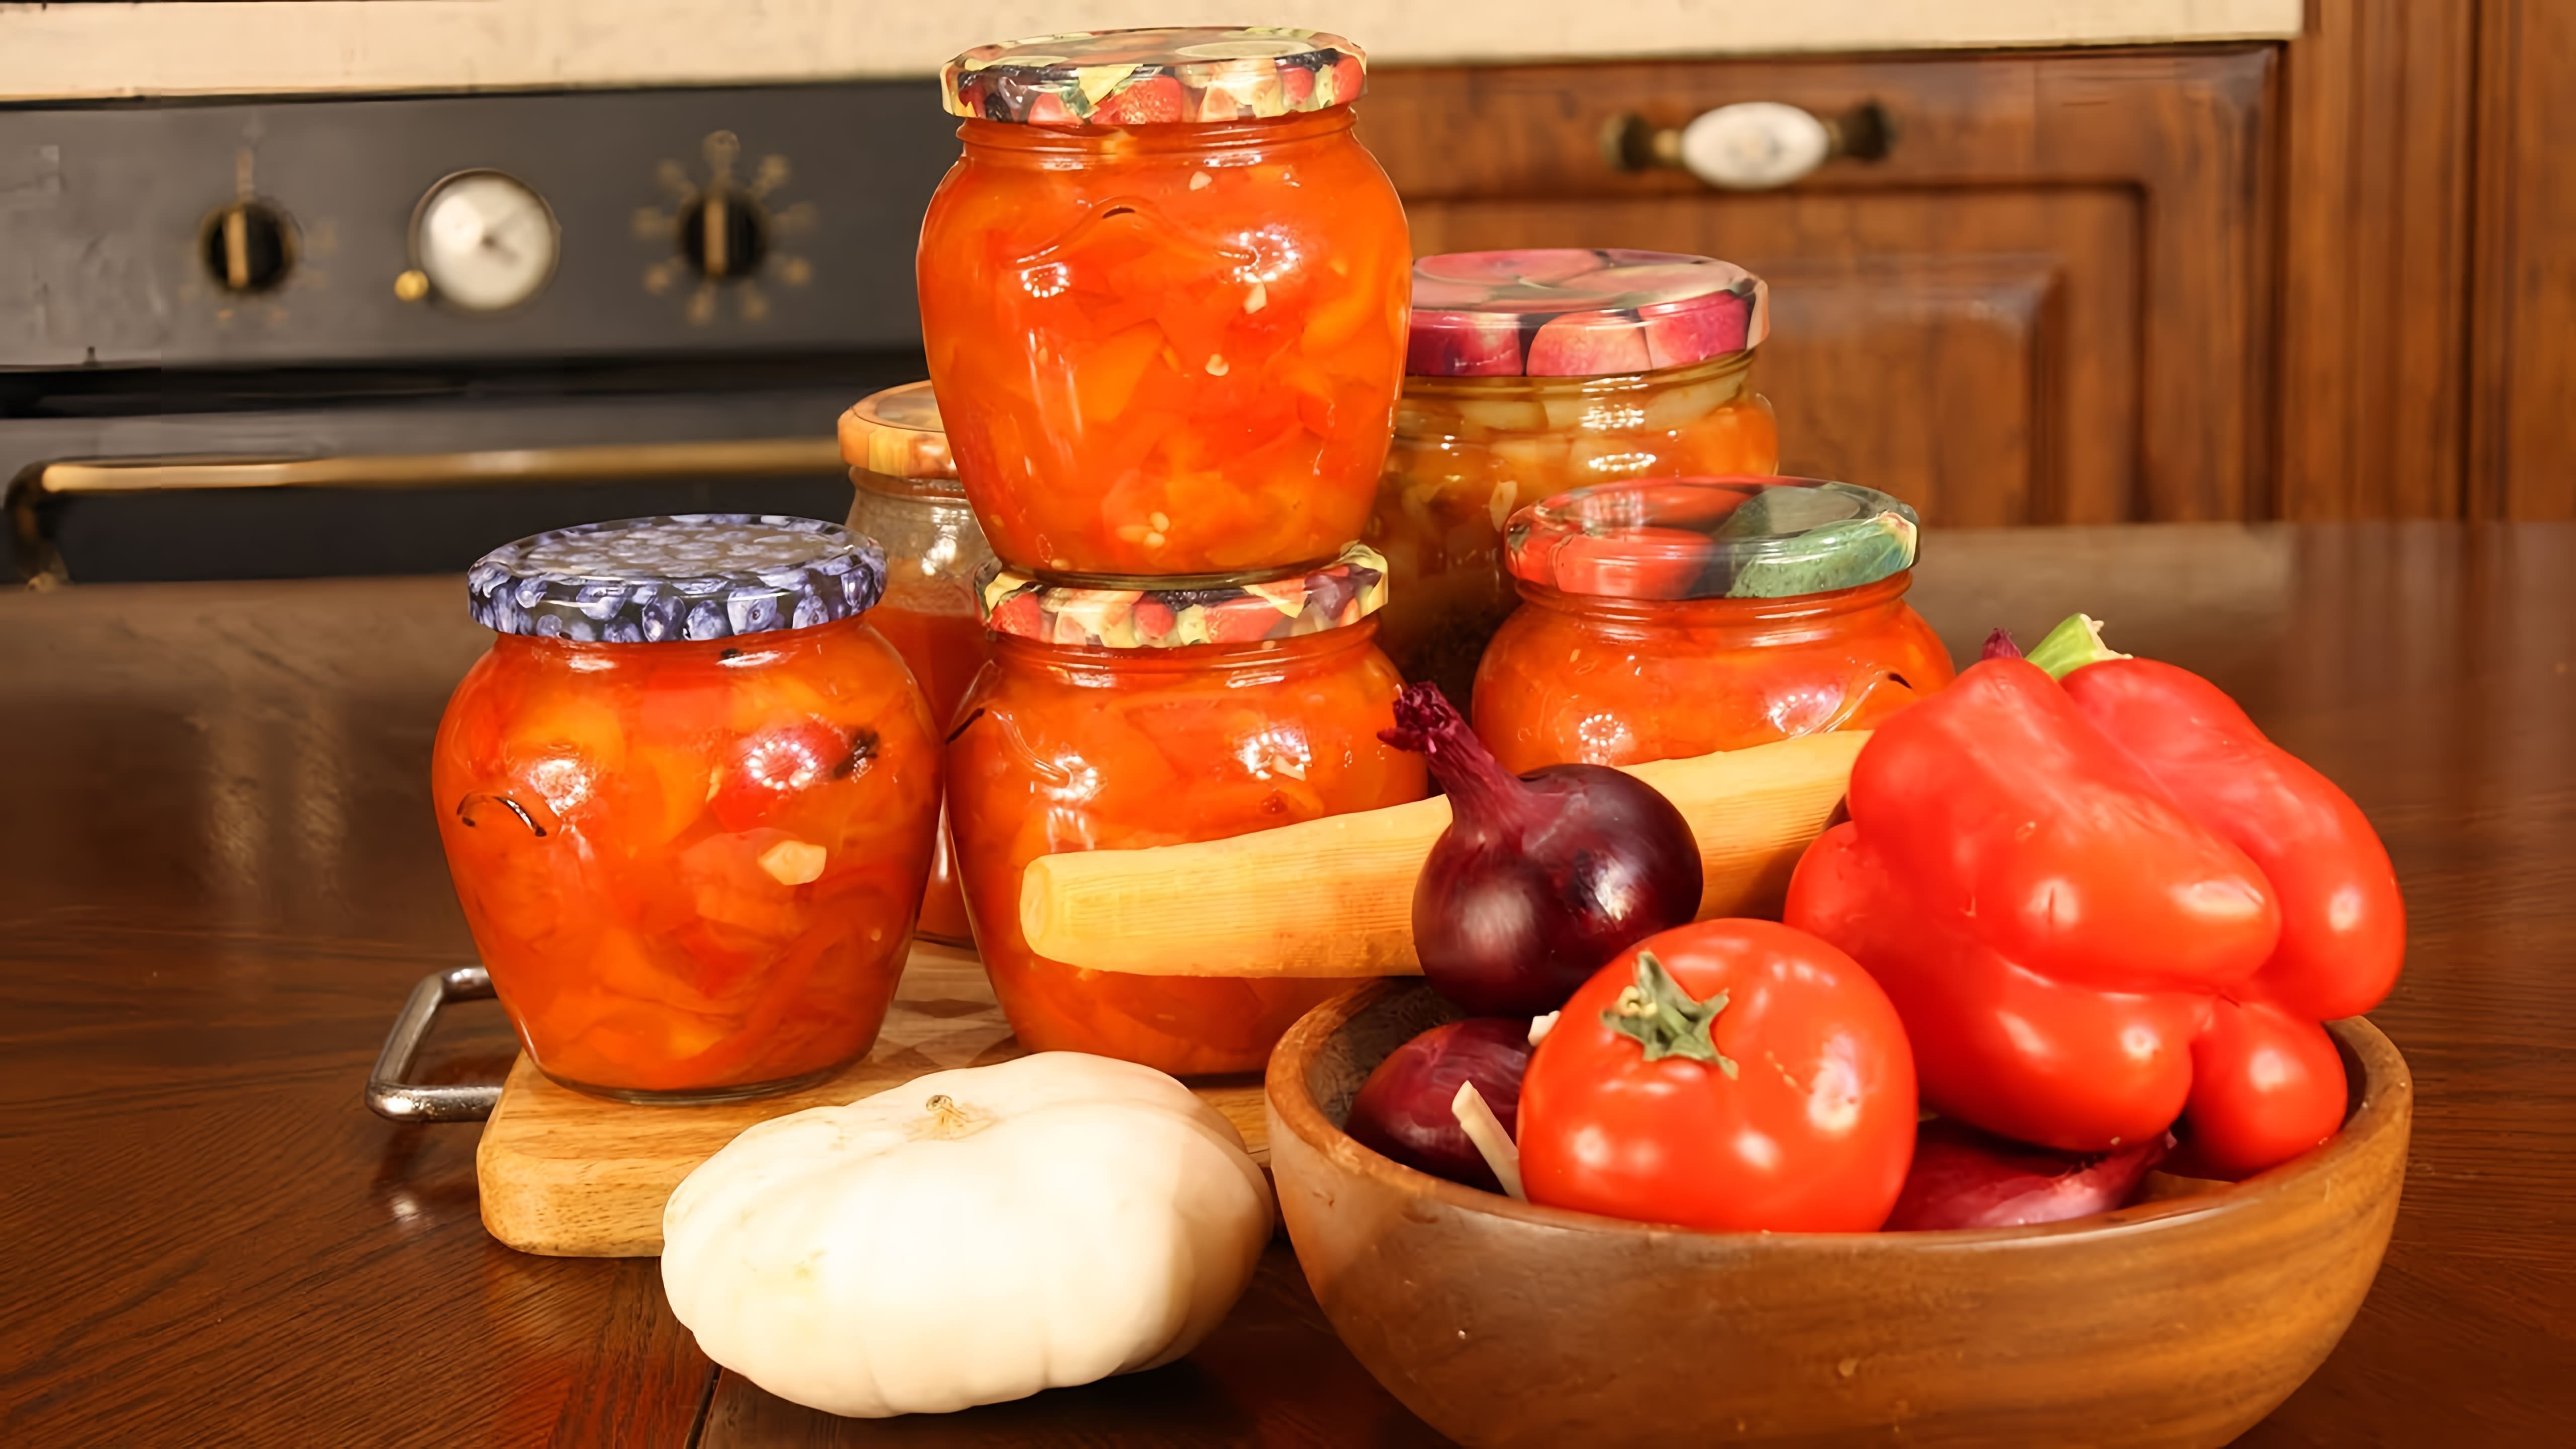 Видео демонстрирует очень простой рецепт приготовления лечо, болгарского перченого соуса, используя помидоры и перцы из собственного сада